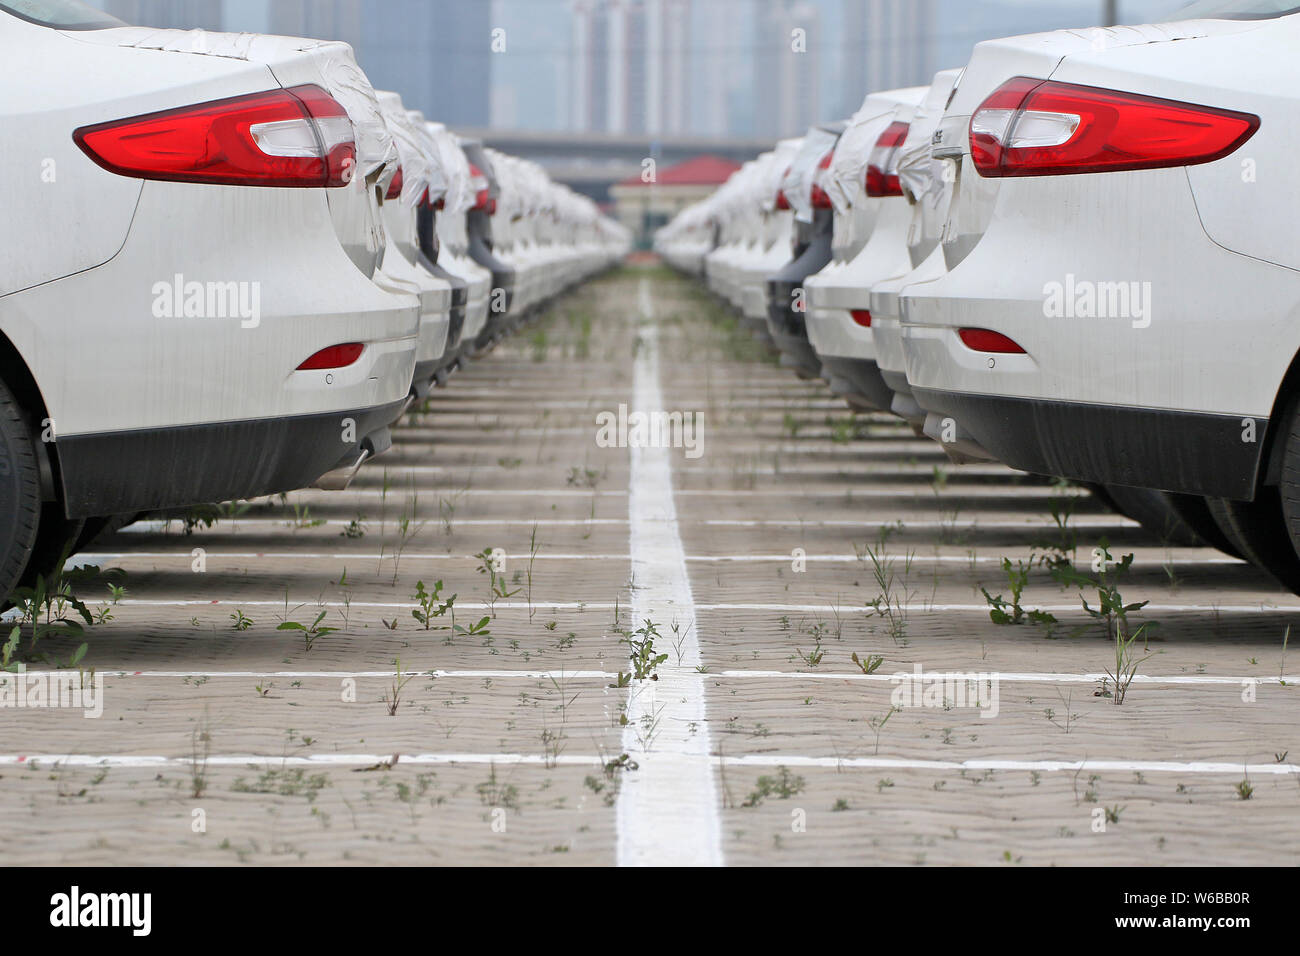 ---- Importierte Autos sind am Hafen von Qingdao in Qingdao Stadt gesäumt, der ostchinesischen Provinz Shandong, 28. Mai 2016. China wird Einfuhrzoll Schnitt Stockfoto